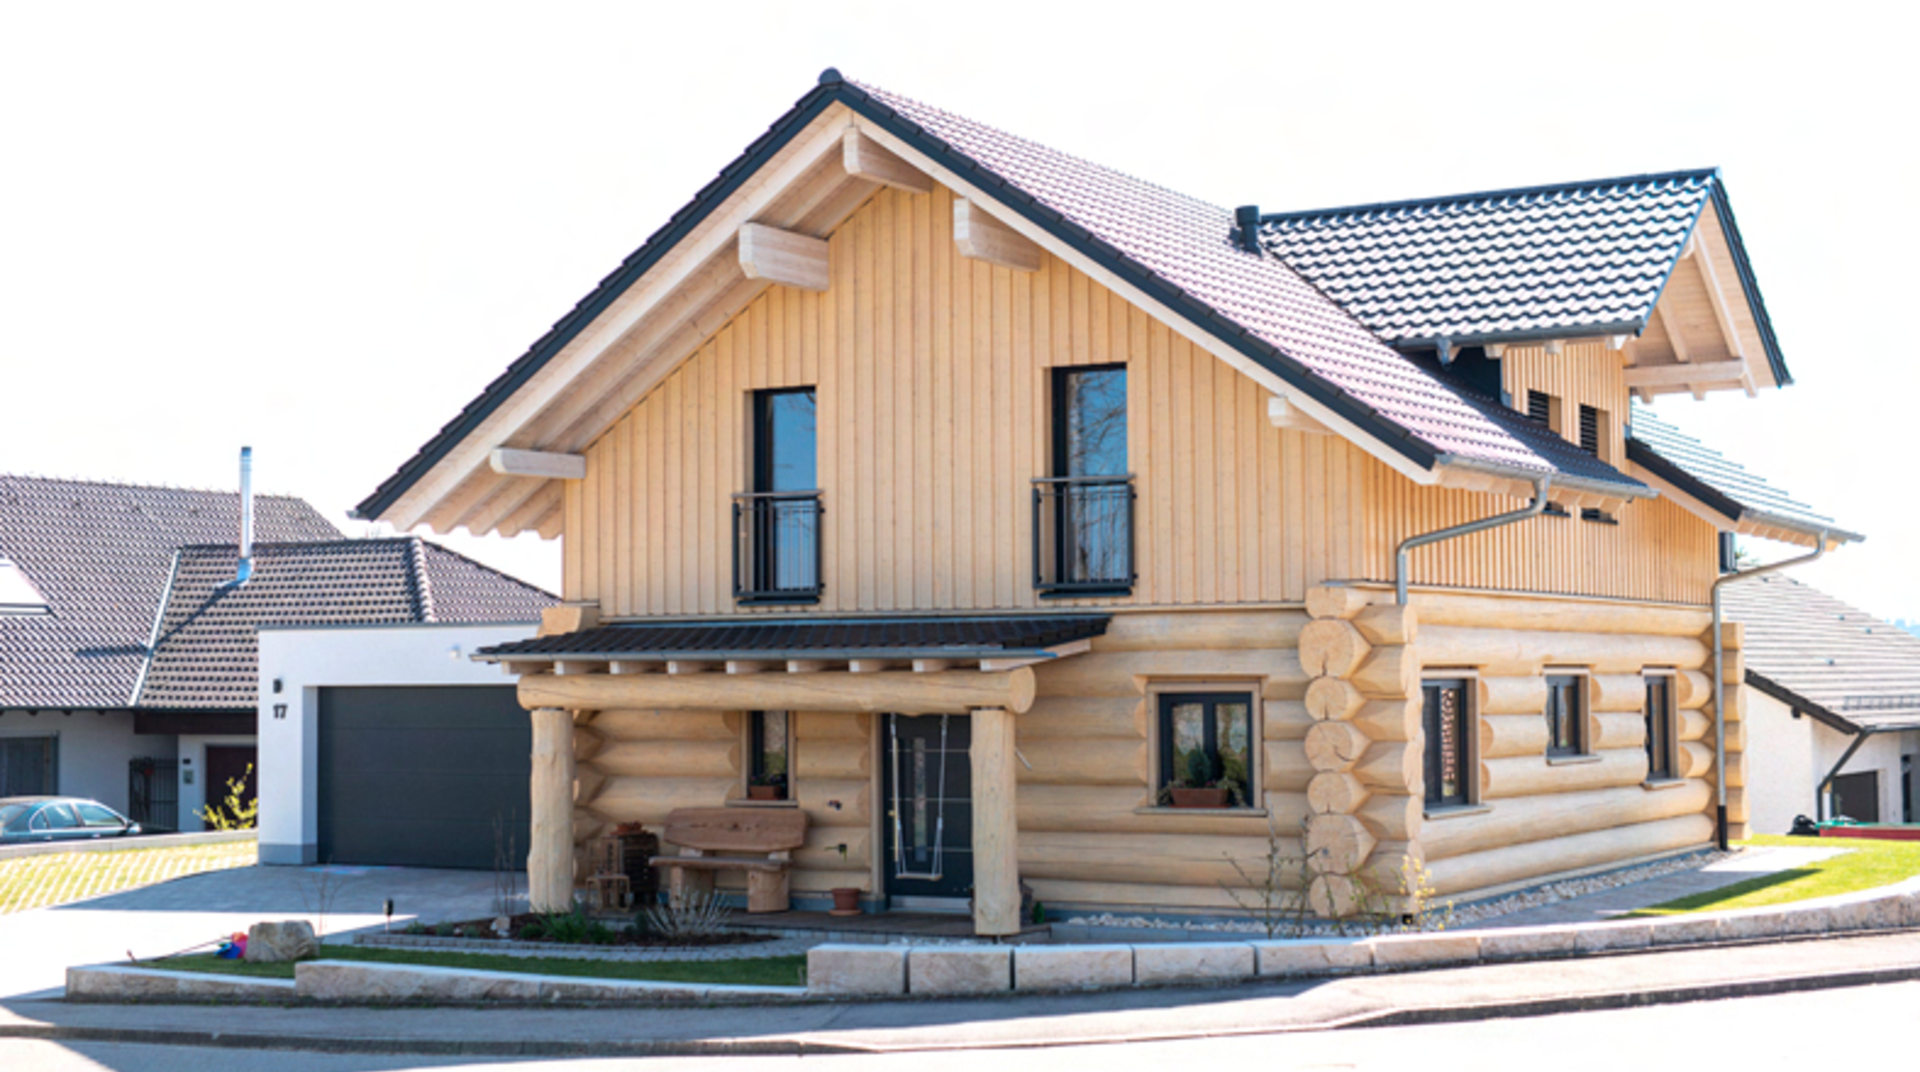 Blockhaus mit Garage und Vordach, von vorne fotografiert, helles Holz